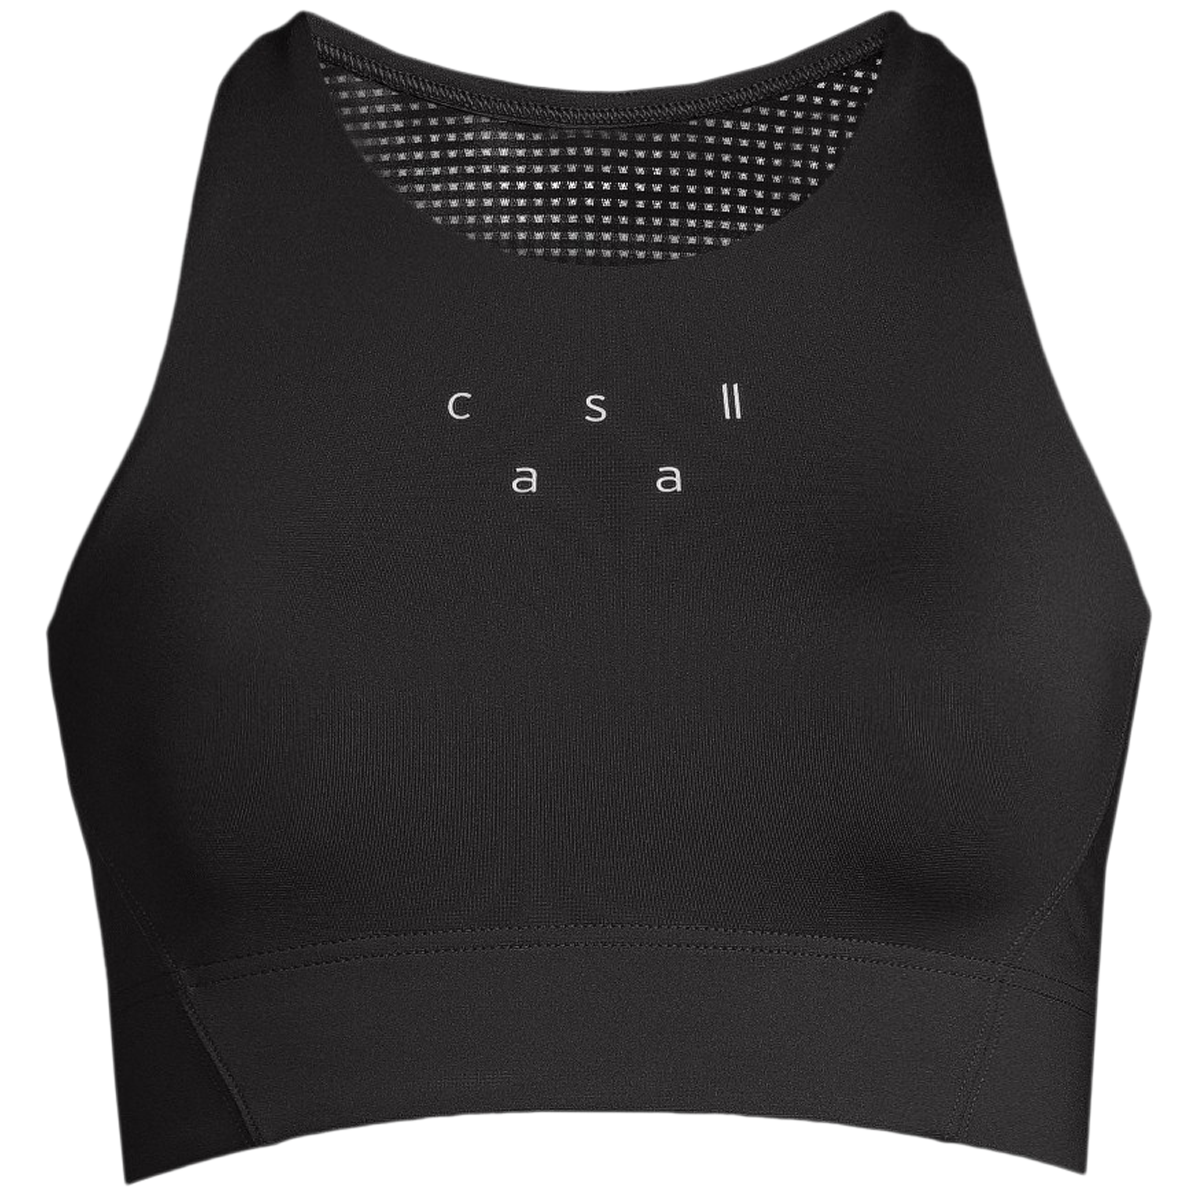 Casall Bralette Sports Bra in Black